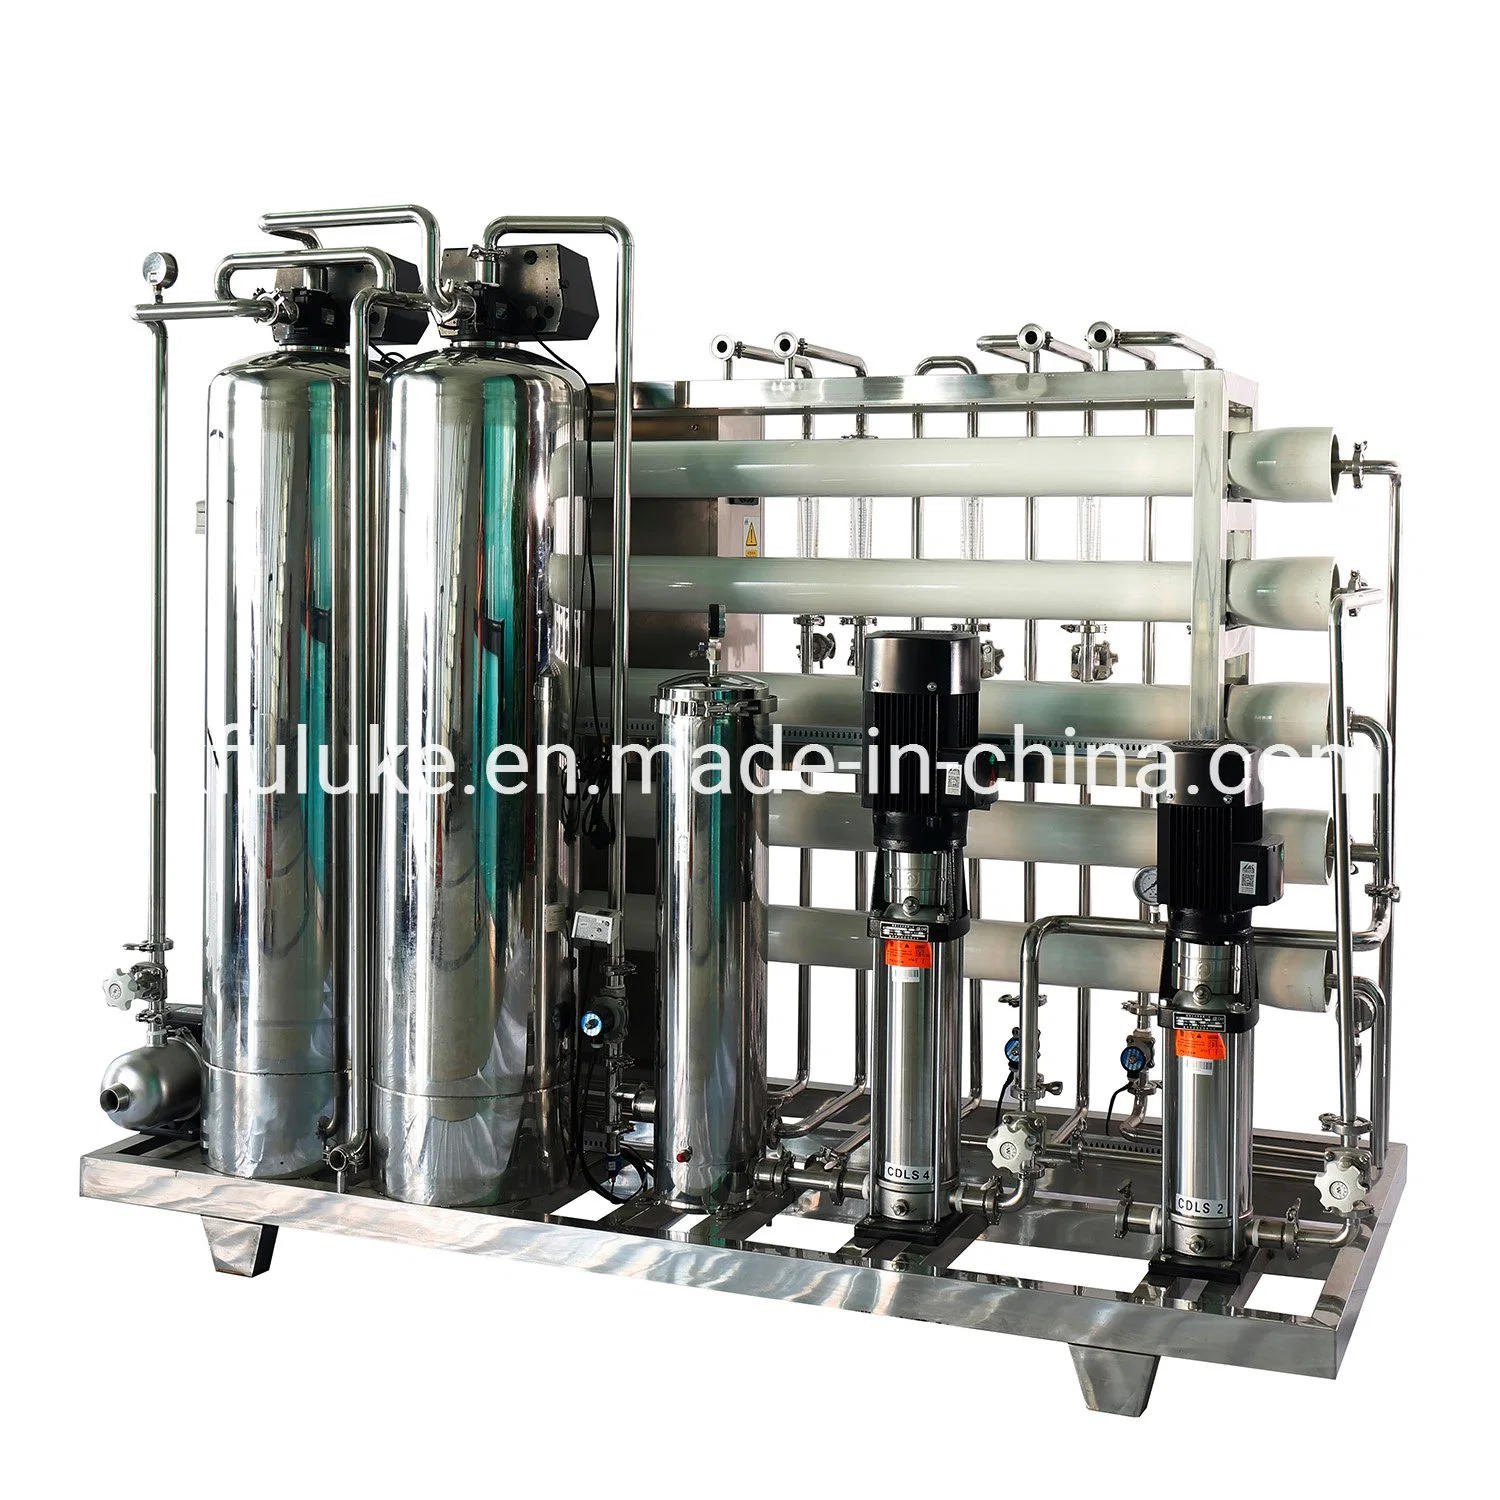 Wasser gereinigt Station Automatische Wasser gereinigt Gerät Automatische RO Wasser Gereinigtes Gerät